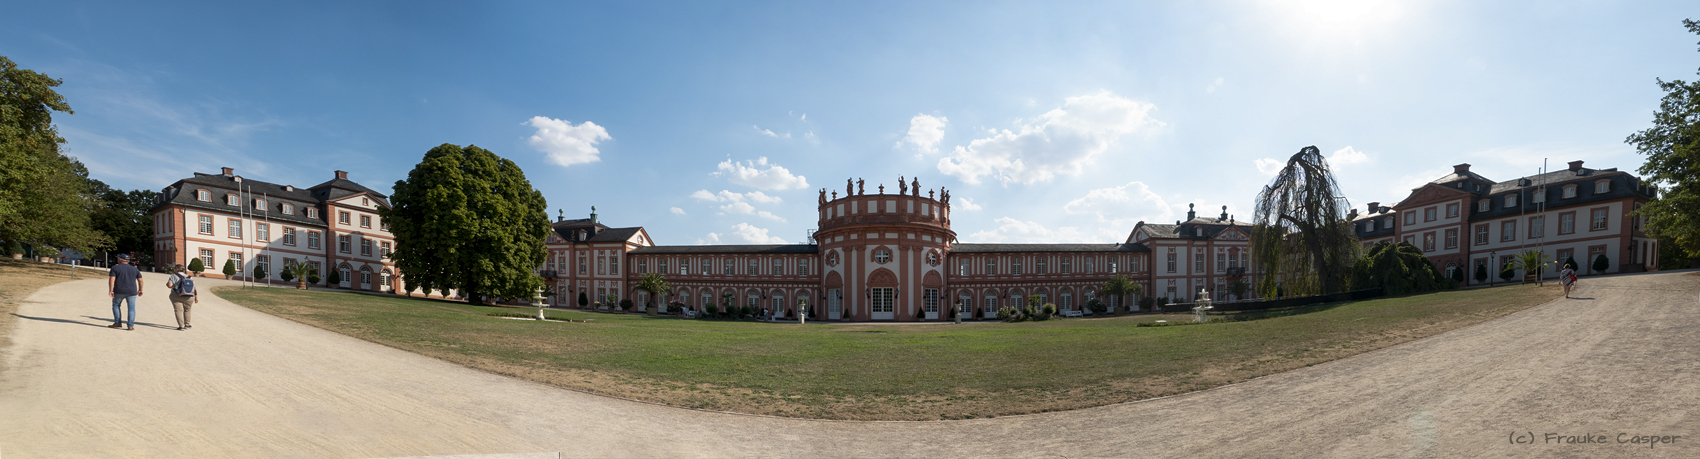 Panorama von Schloss Biebrich in Wiesbaden